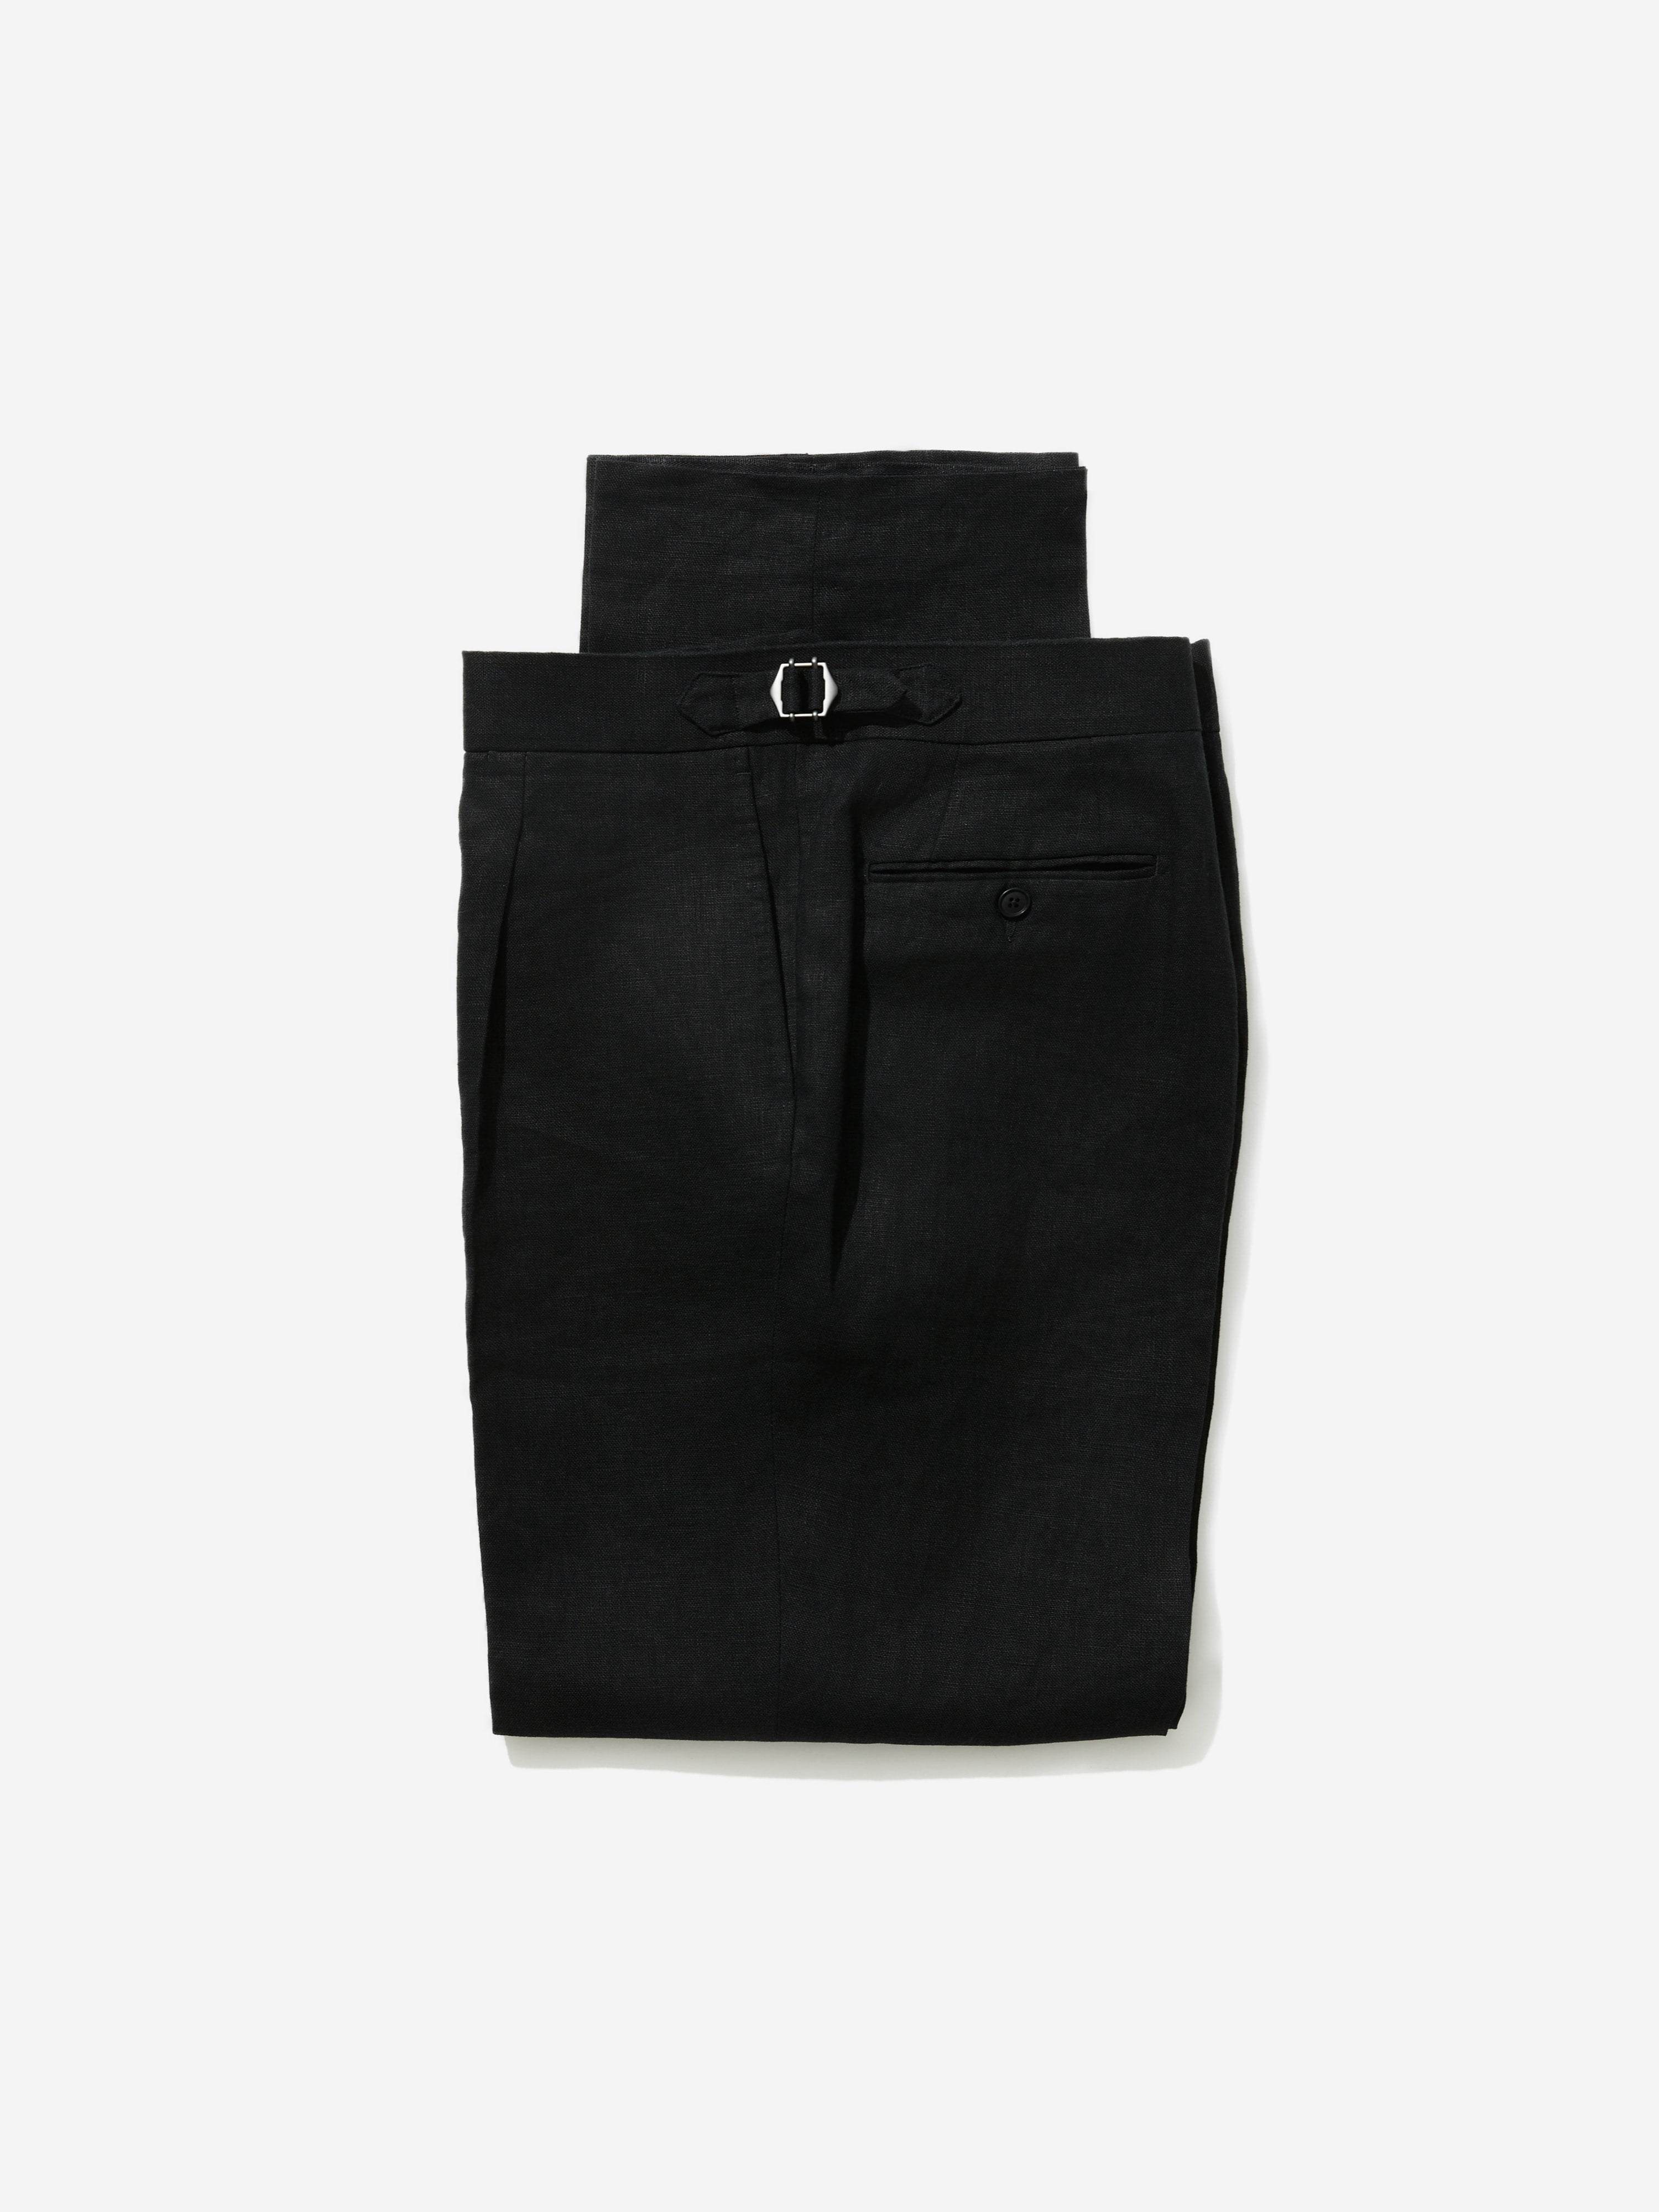 Black Linen Oscar Trousers (Wide Fit) - Grand Le Mar